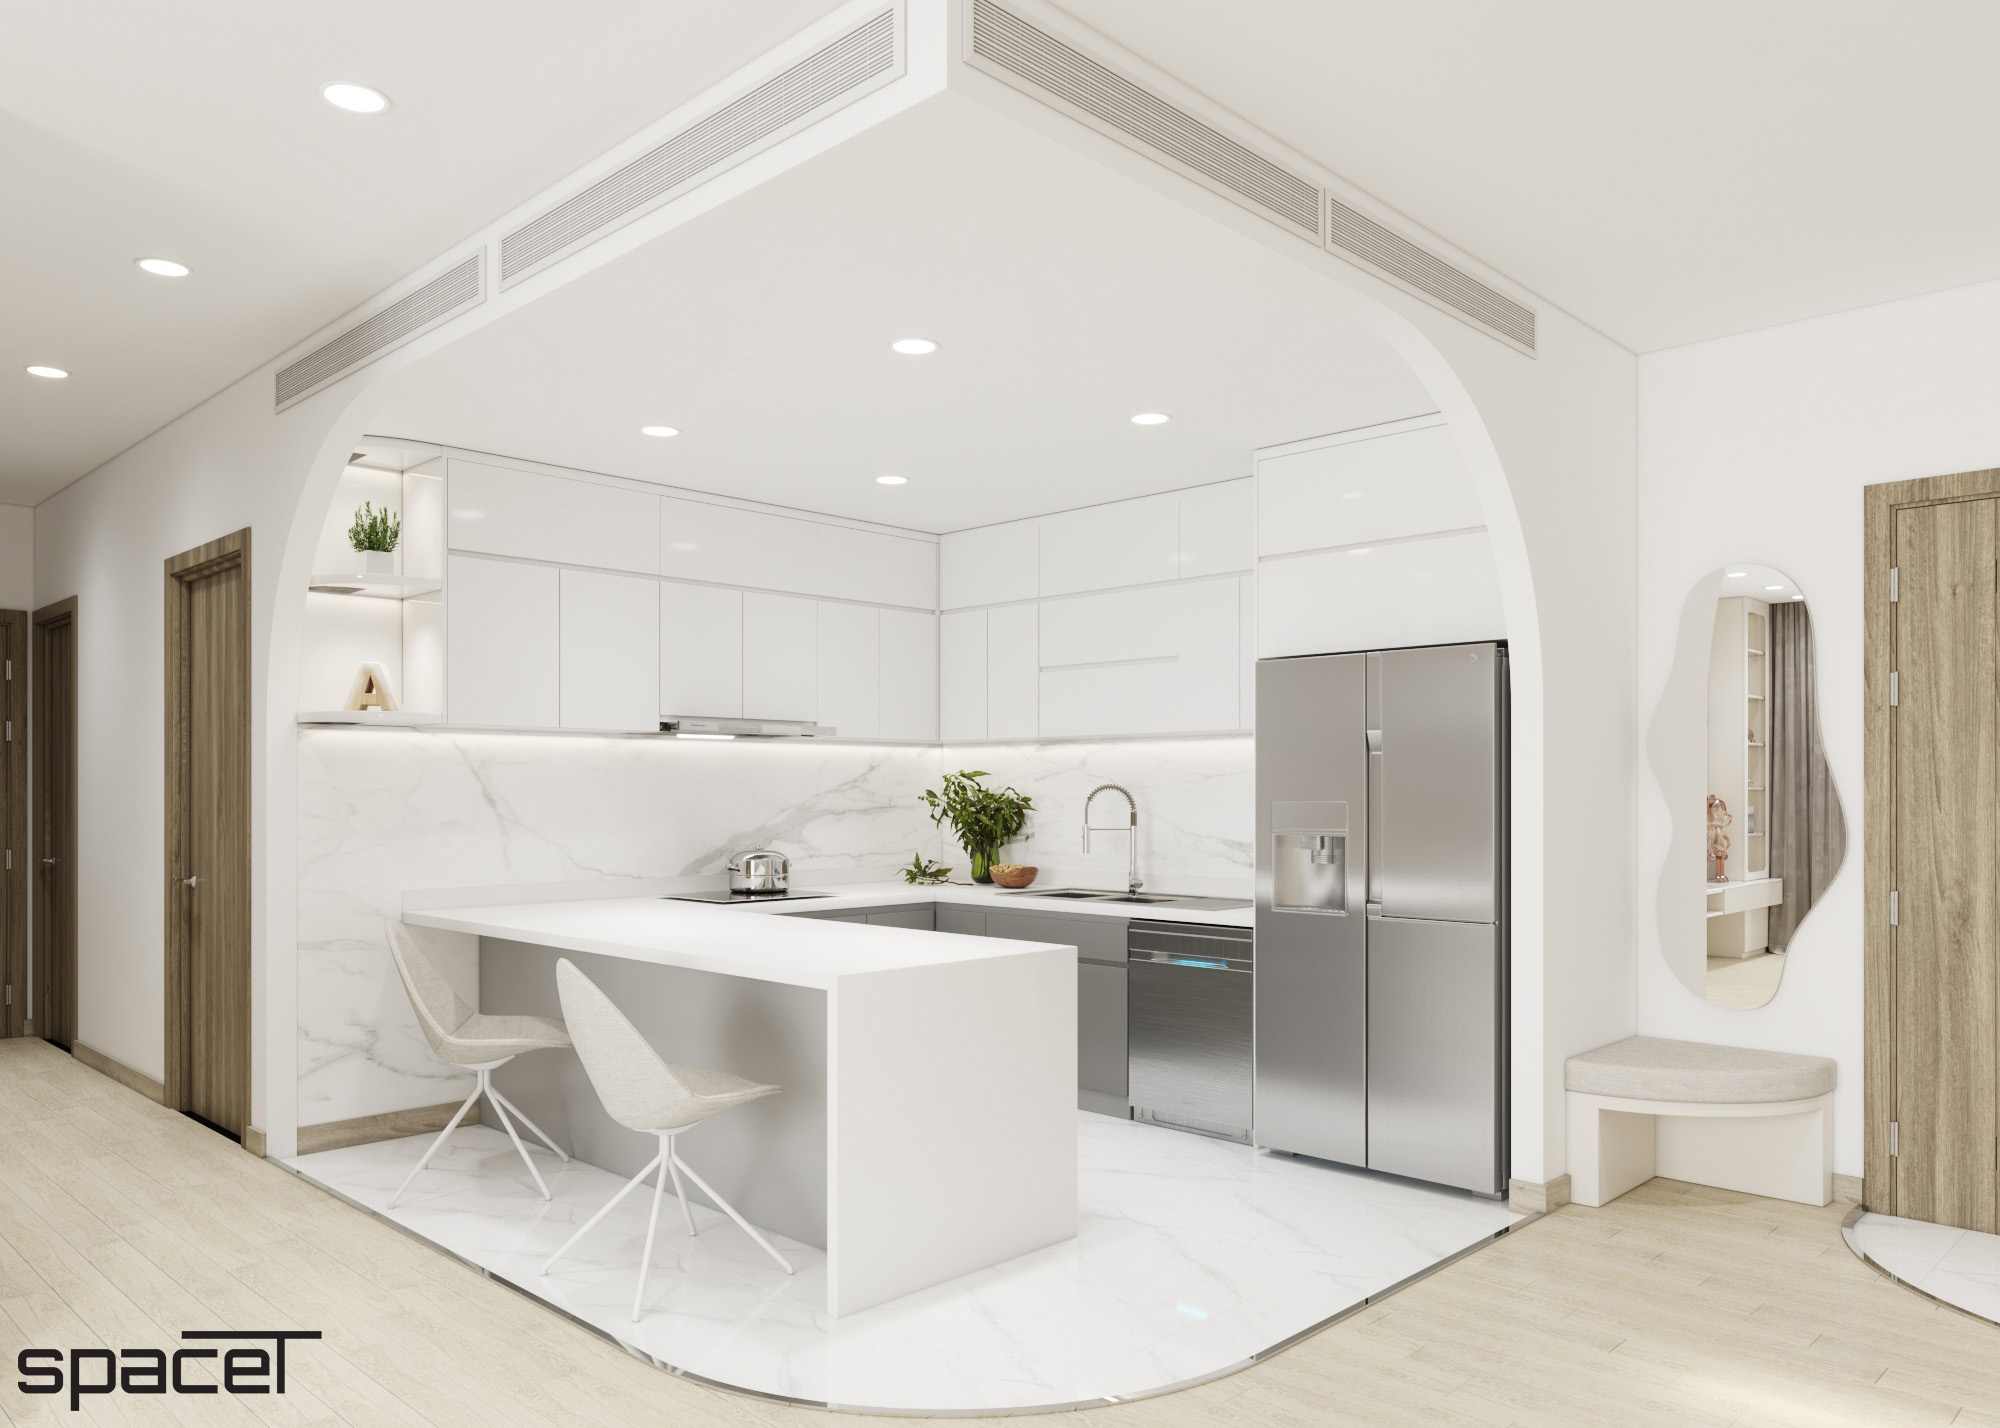 Phòng bếp, phong cách Hiện đại Modern, thiết kế concept nội thất, căn hộ Sunwah Pearl